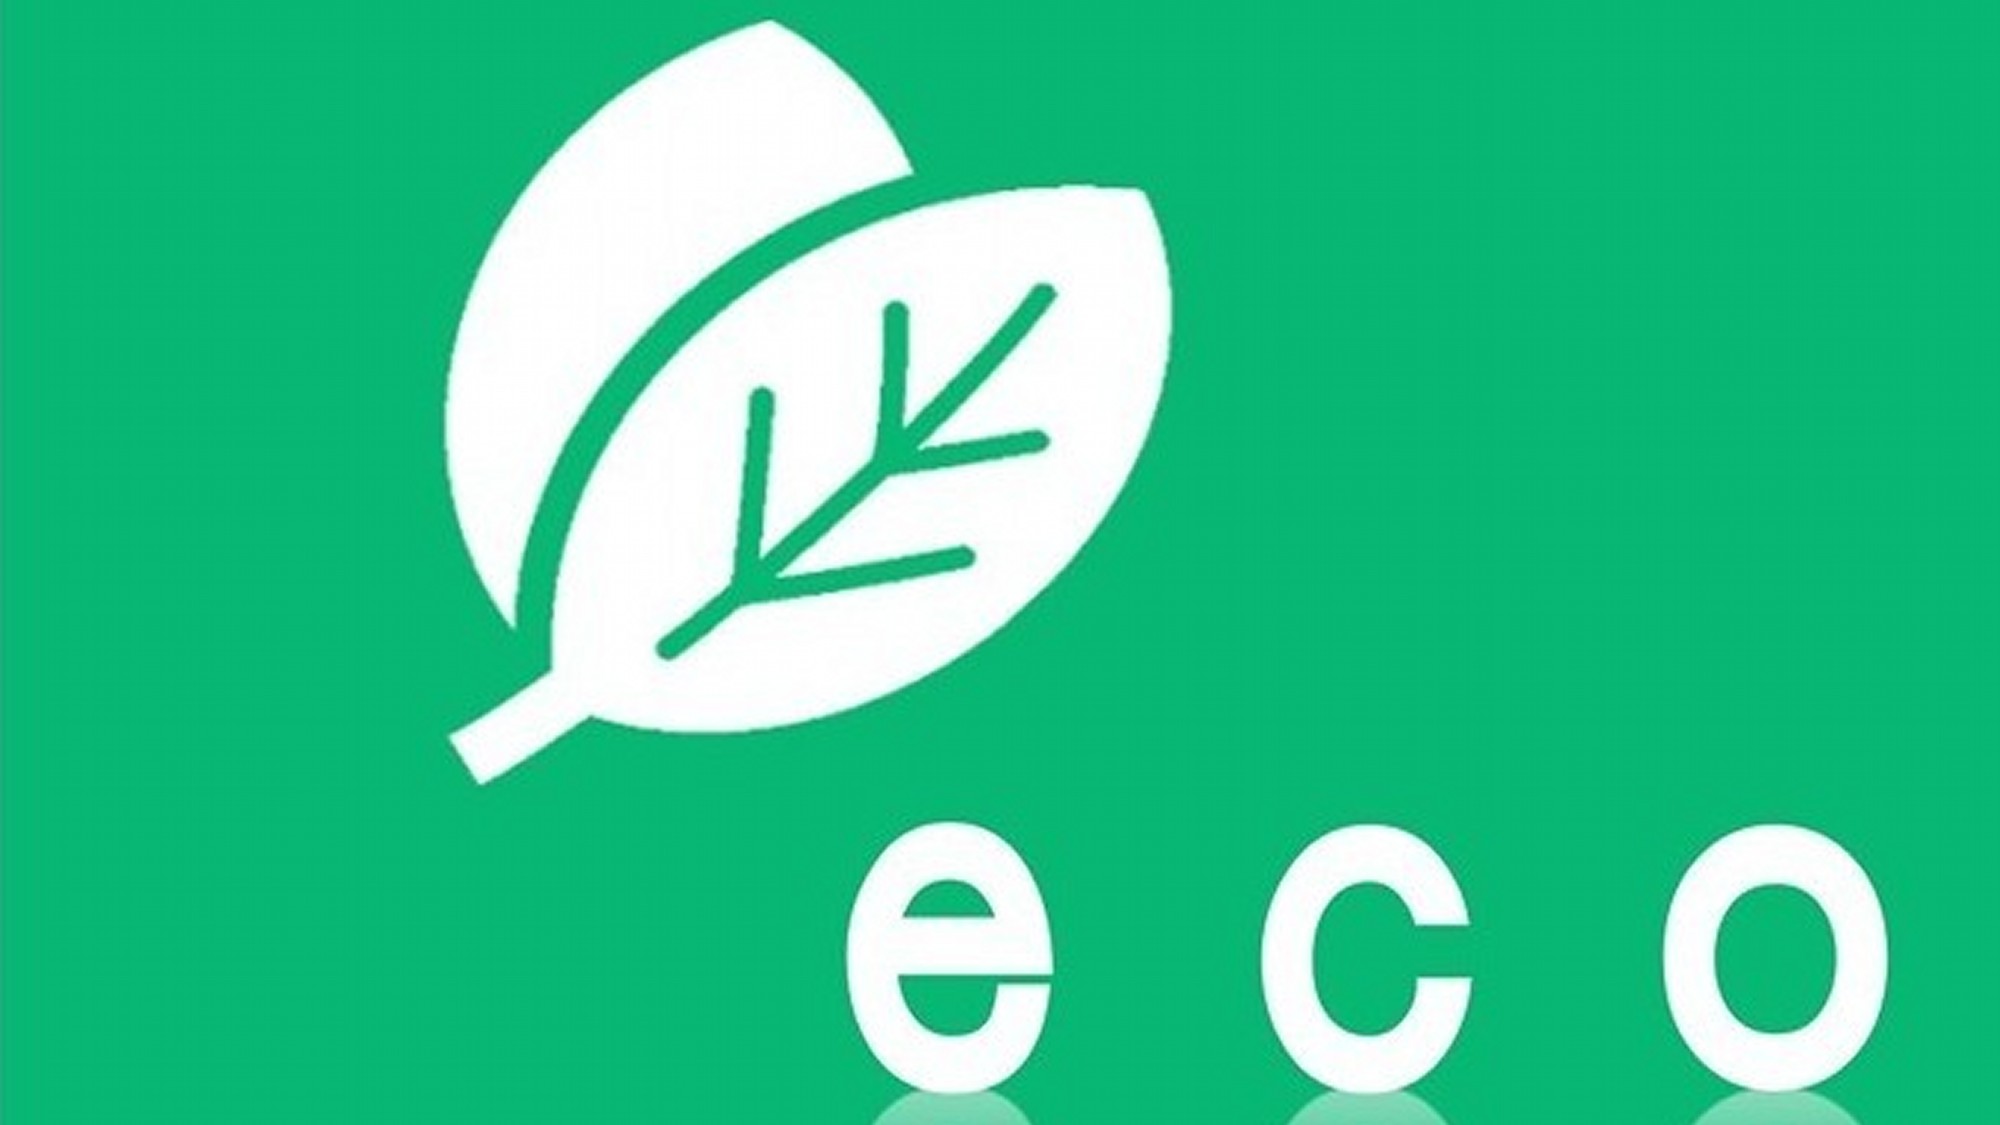 「ホテルシティオ静岡」のECO活動。地球環境保全の取り組みにご協力をお願い致します。